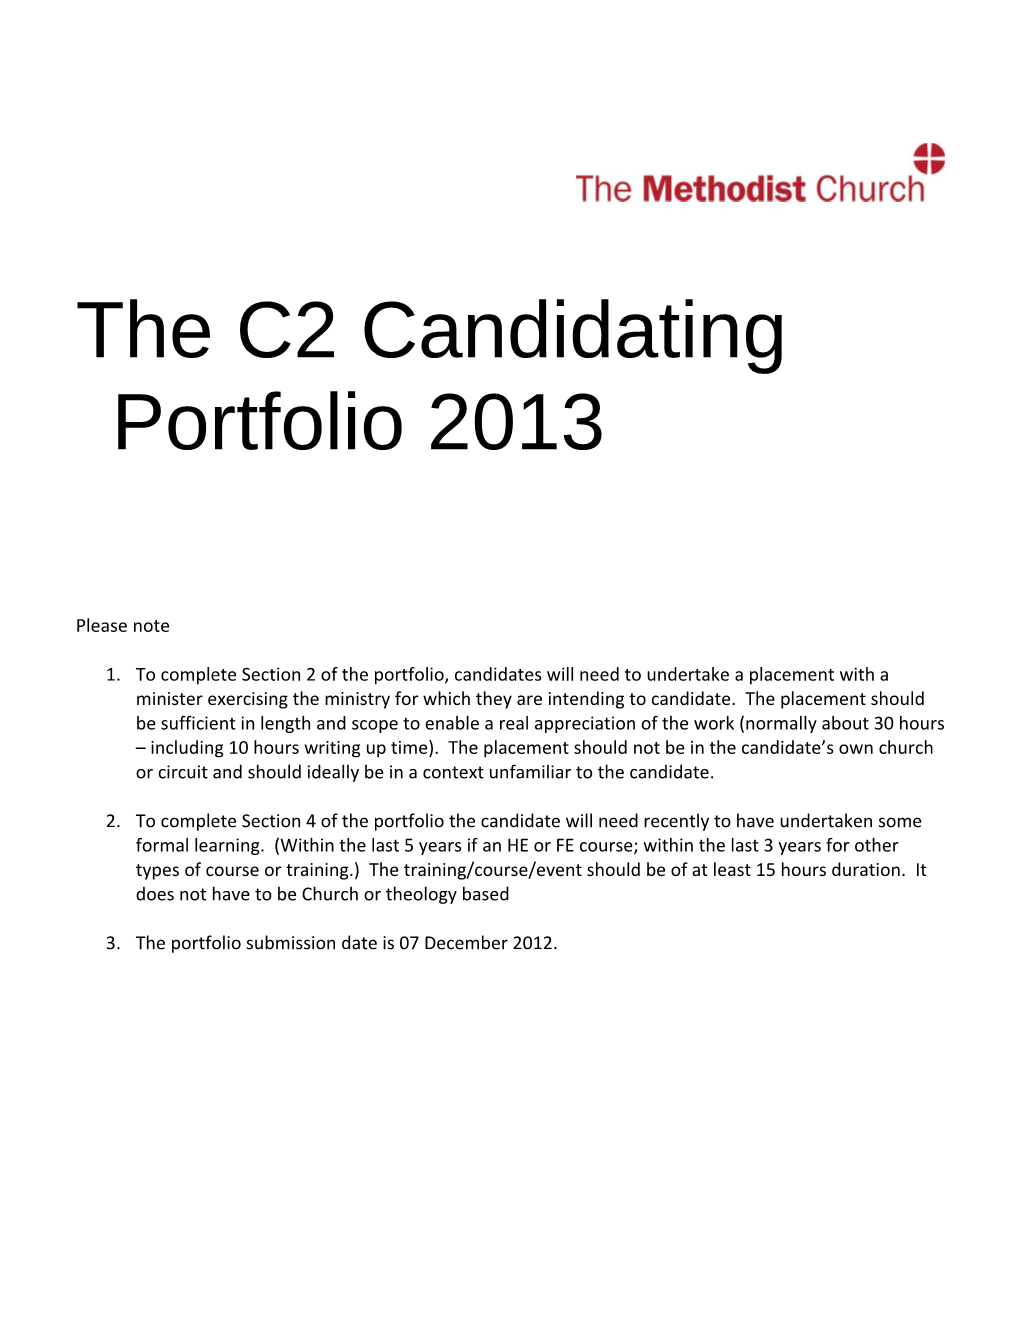 The C2: Candidating Portfolio 2013